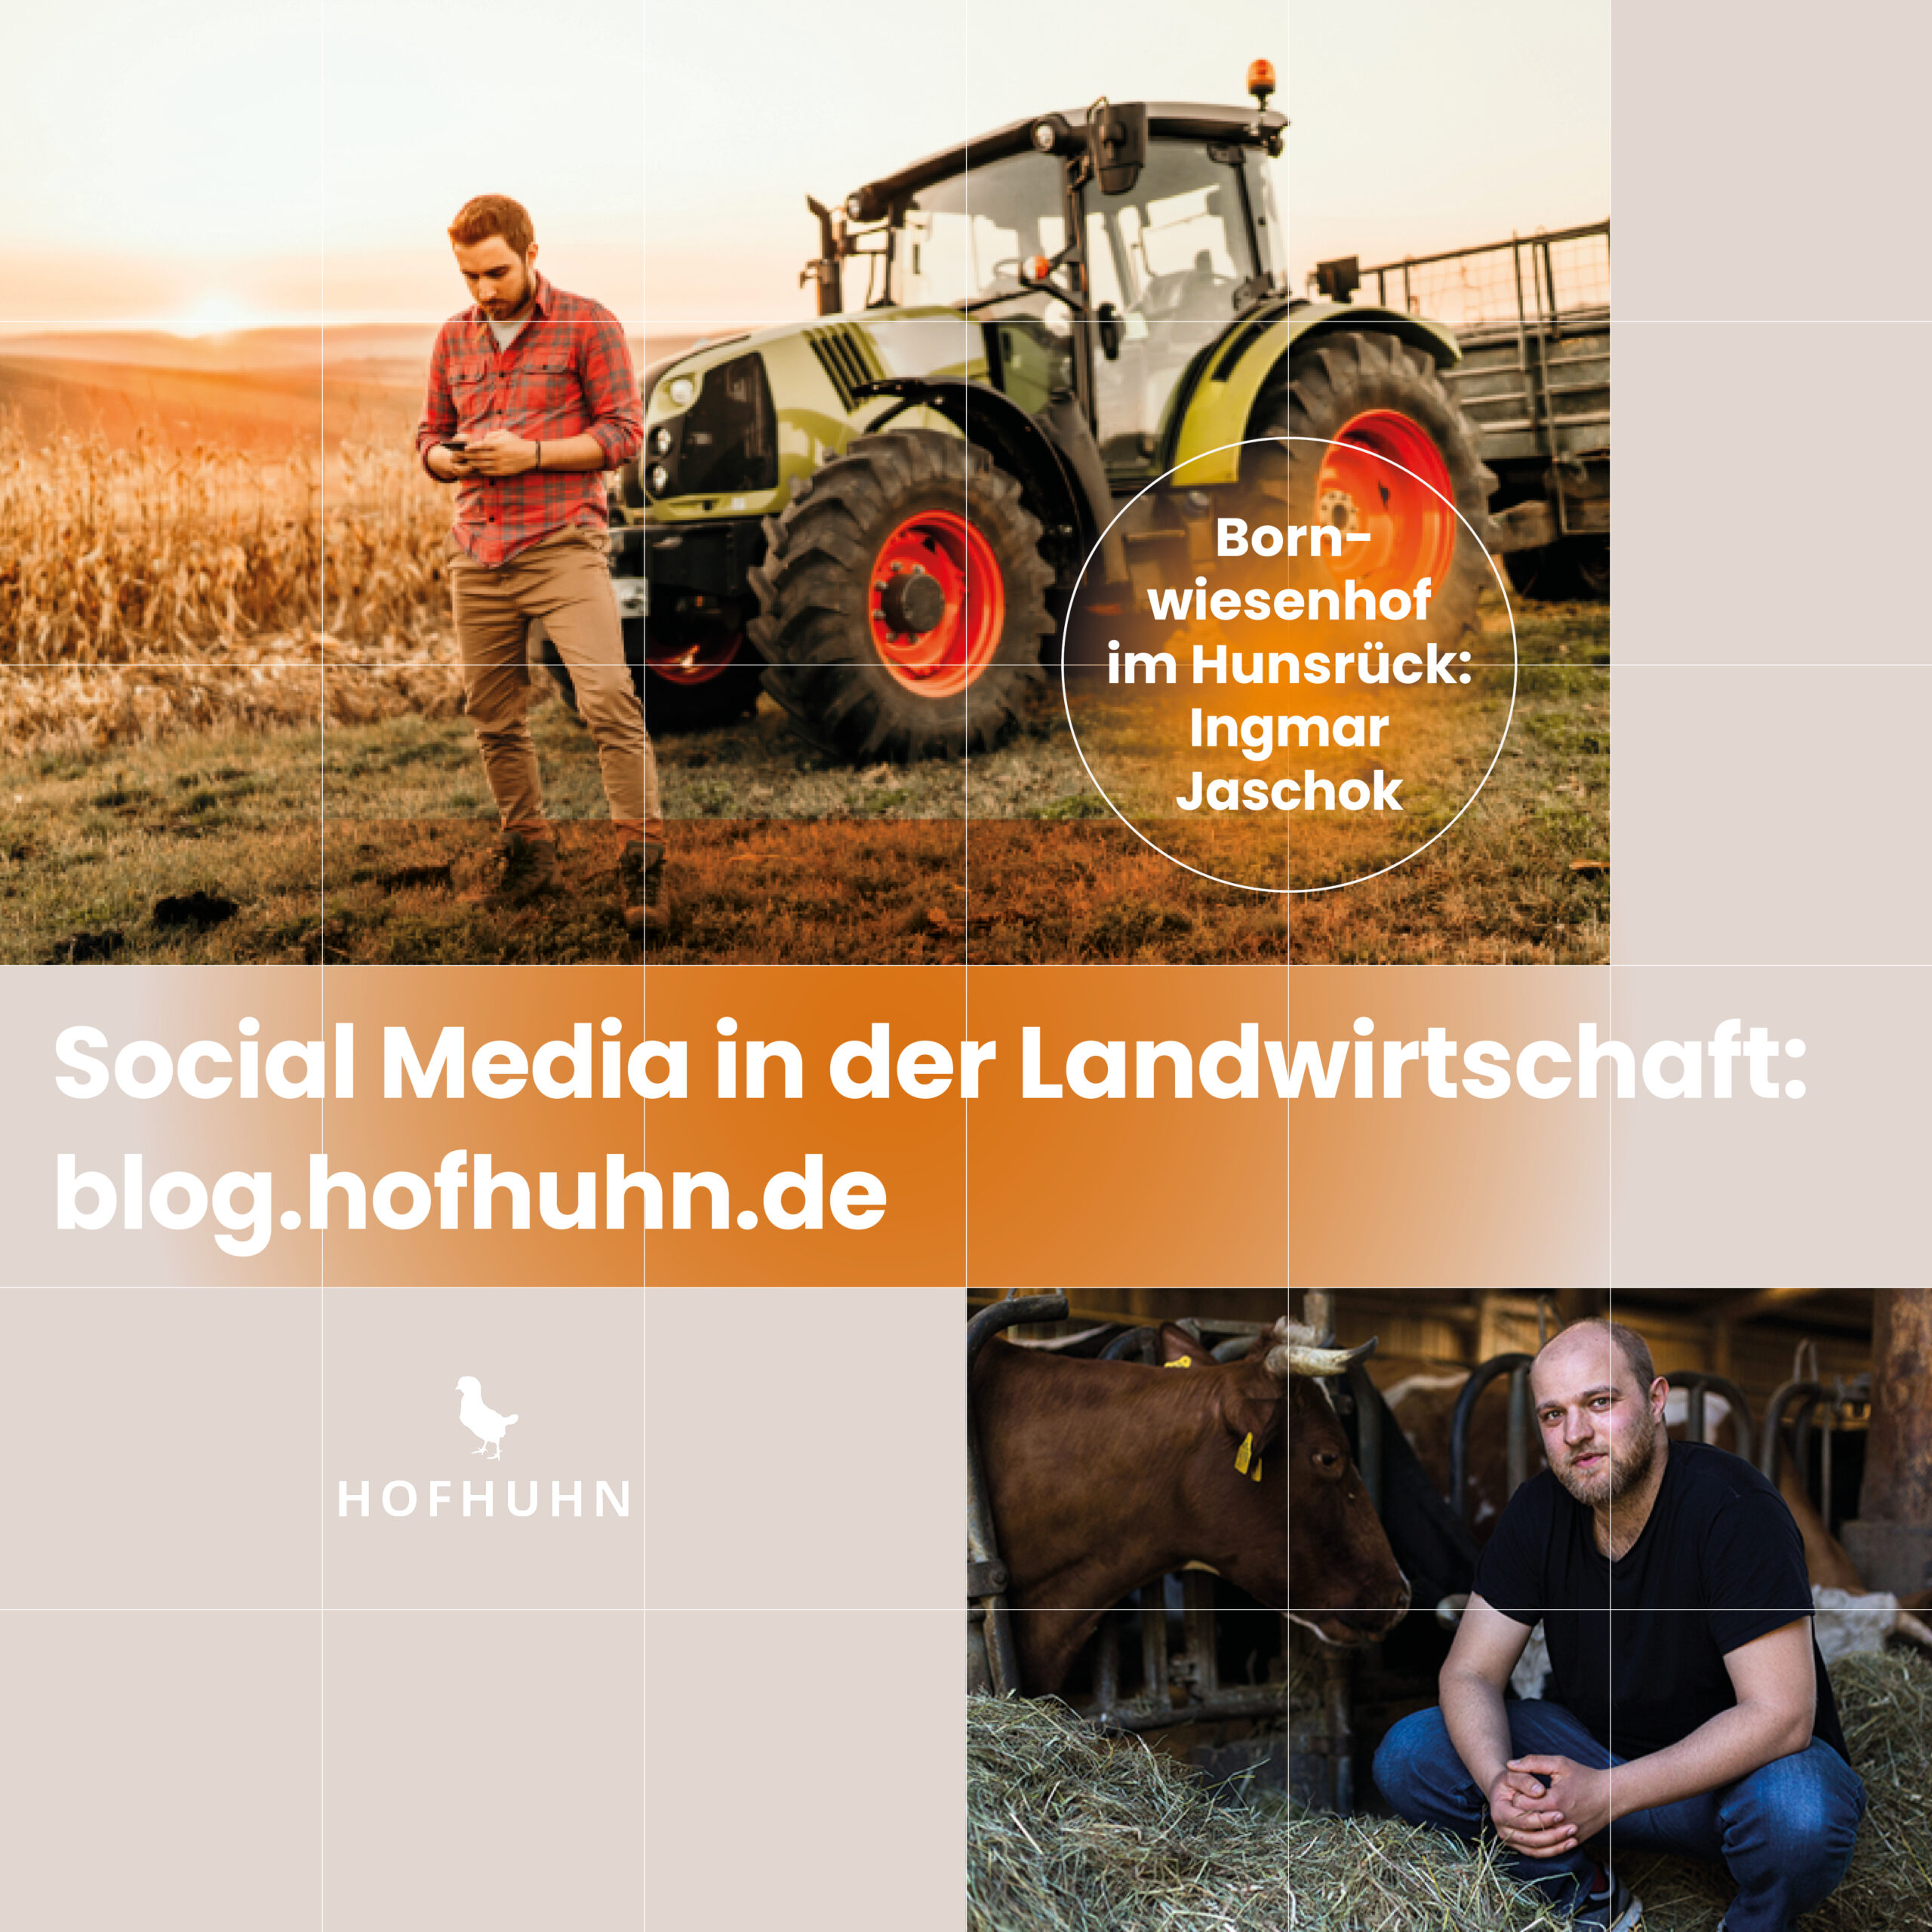 Social Media in der Landwirtschaft – Bornwiesenhof im Hunsrück